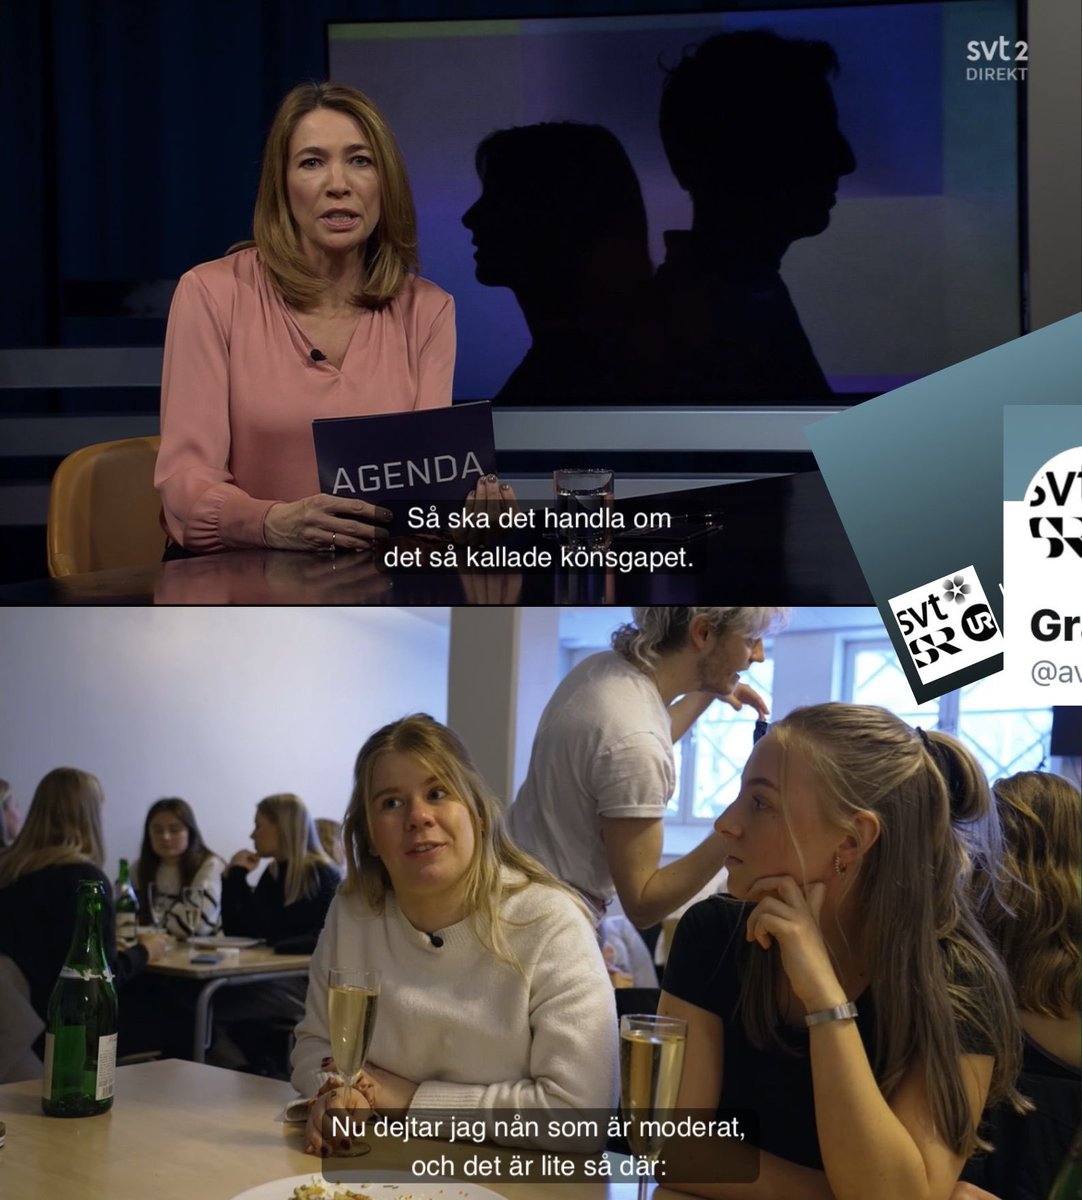 Långt inslag i @SVT #Agenda som problematiserar unga mäns politiska åsikter (höger), medan unga kvinnors vänsteråsikter inte ifrågasätts eller ses som kontroversiella.

@SVTNyheter #SVTAgenda #journalistik svtplay.se/video/eWmbr7p/…